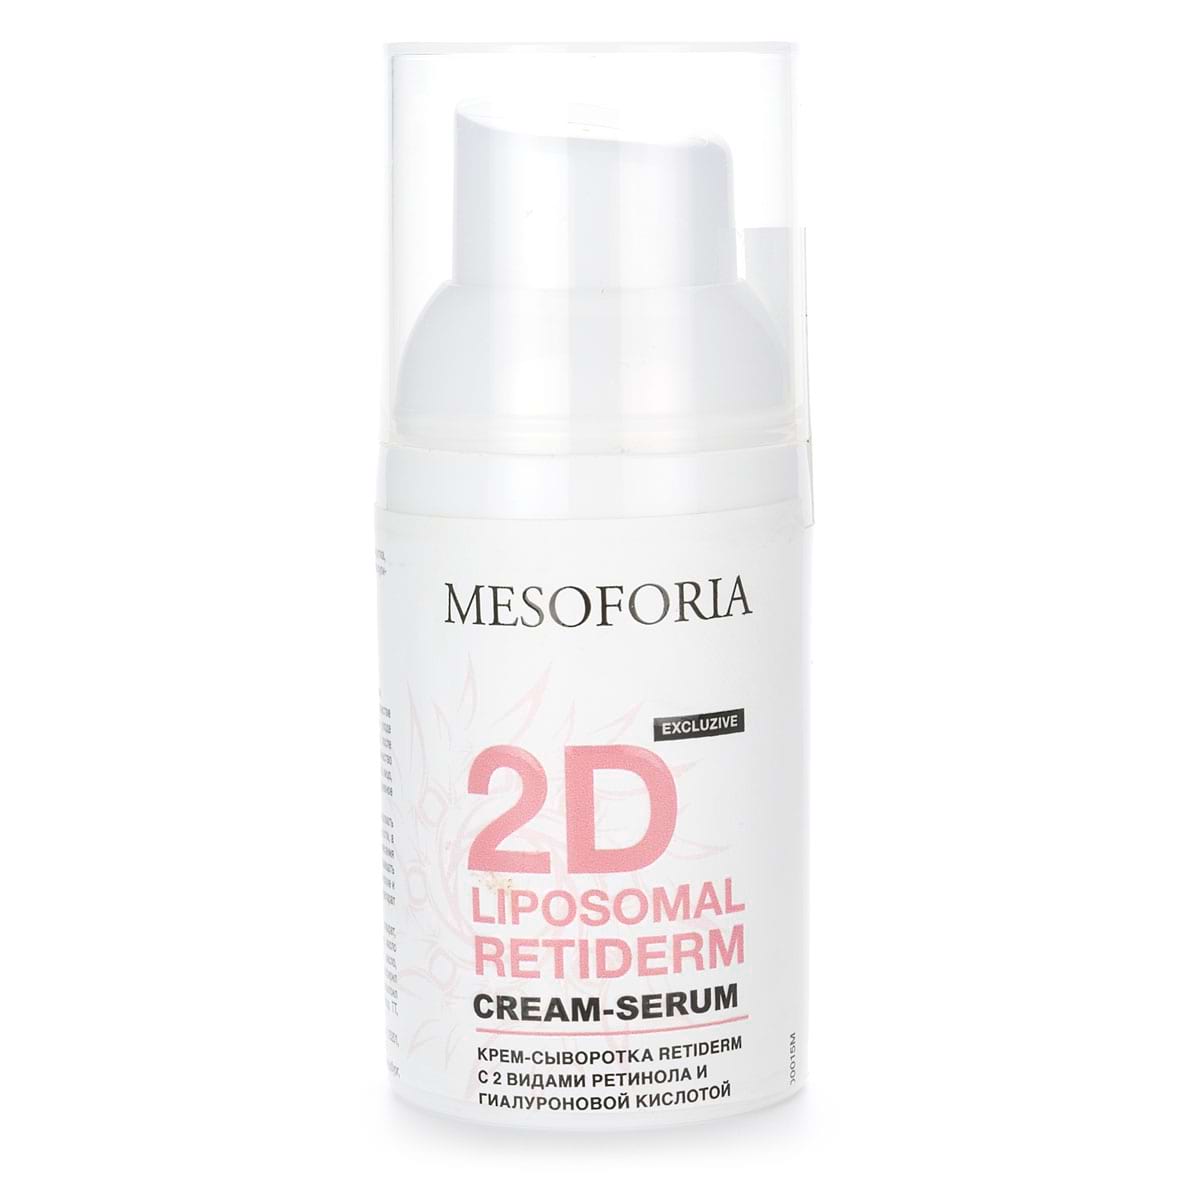 2D Liposomal Retiderm Cream-Serum / Крем-сыворотка Retiderm c 2 видами ретинола и гиалуроновой кислотой, Mesoforia (Мезофория) – 30 мл